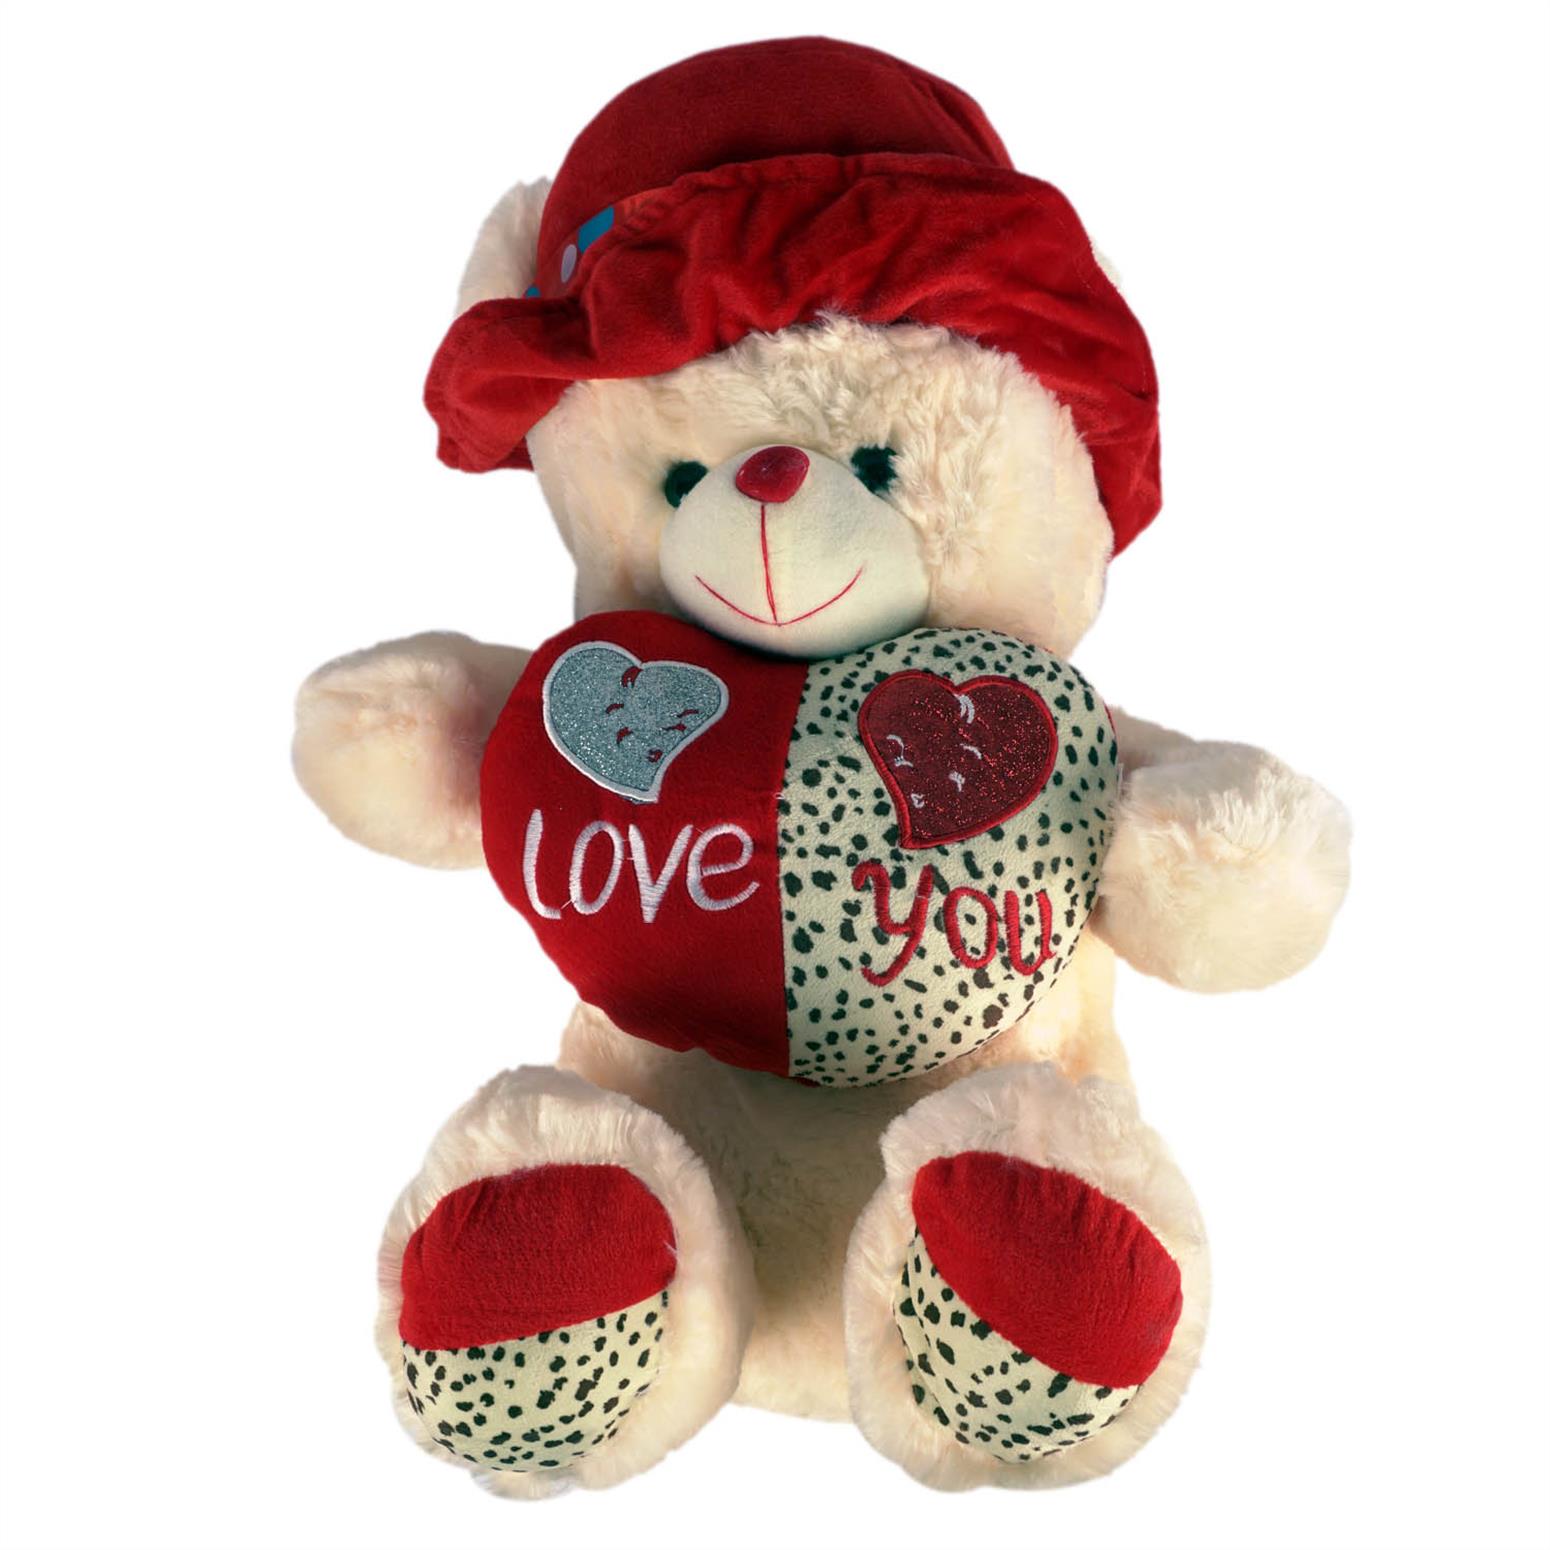 50 cm Plush Bear with Heart